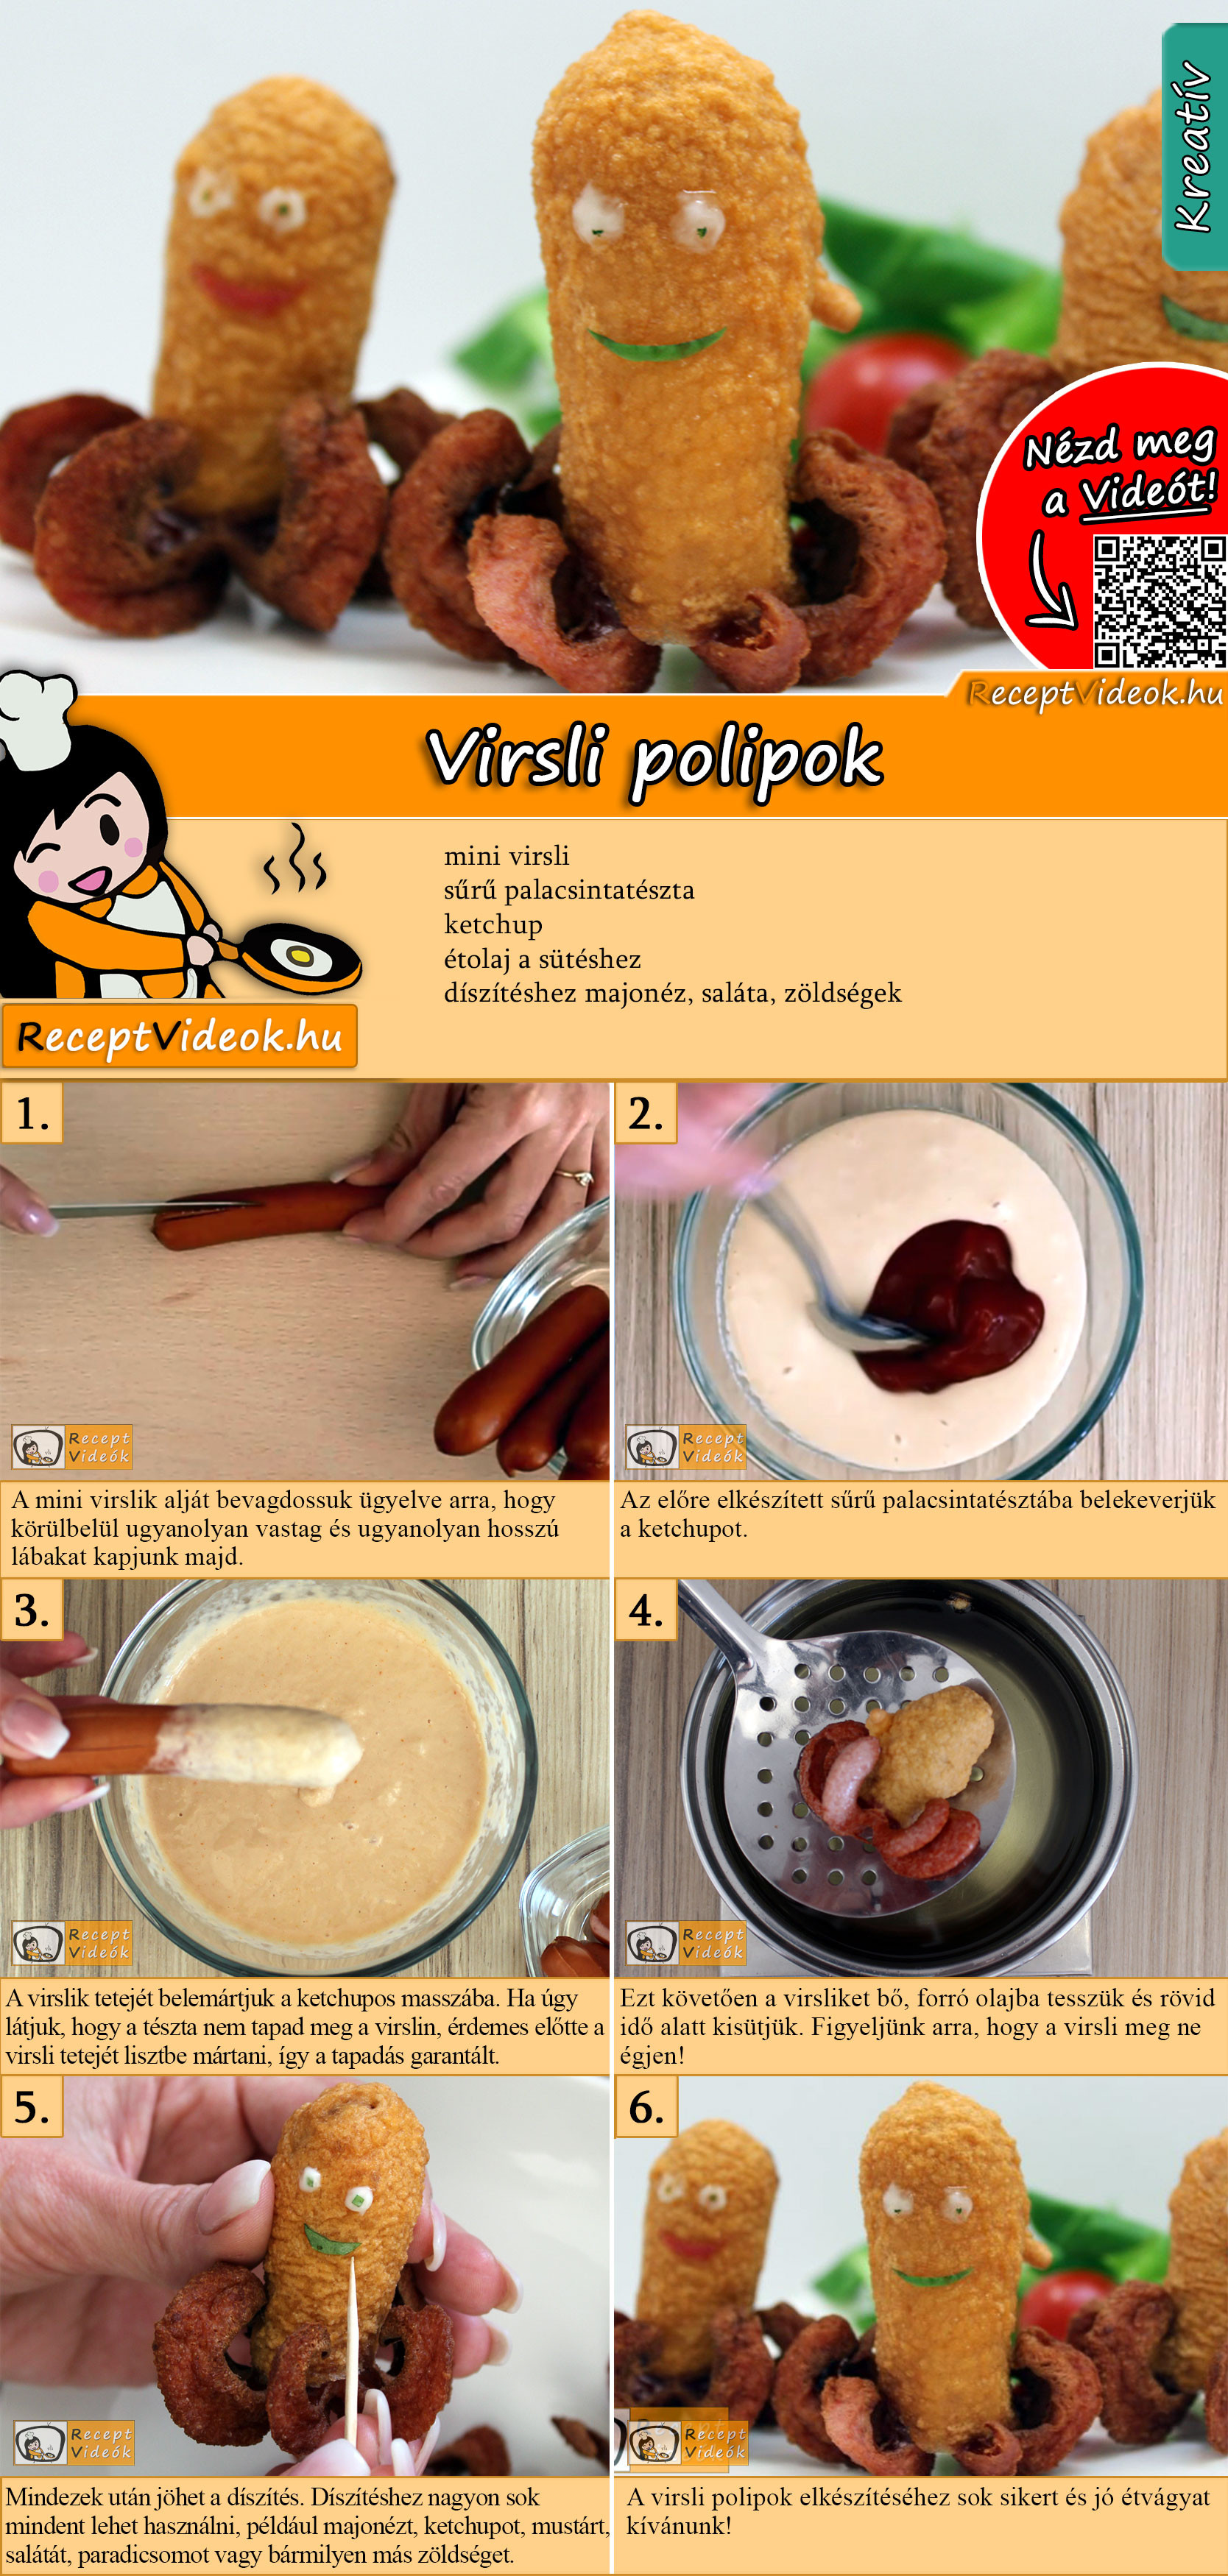 Virsli polipok recept elkészítése videóval